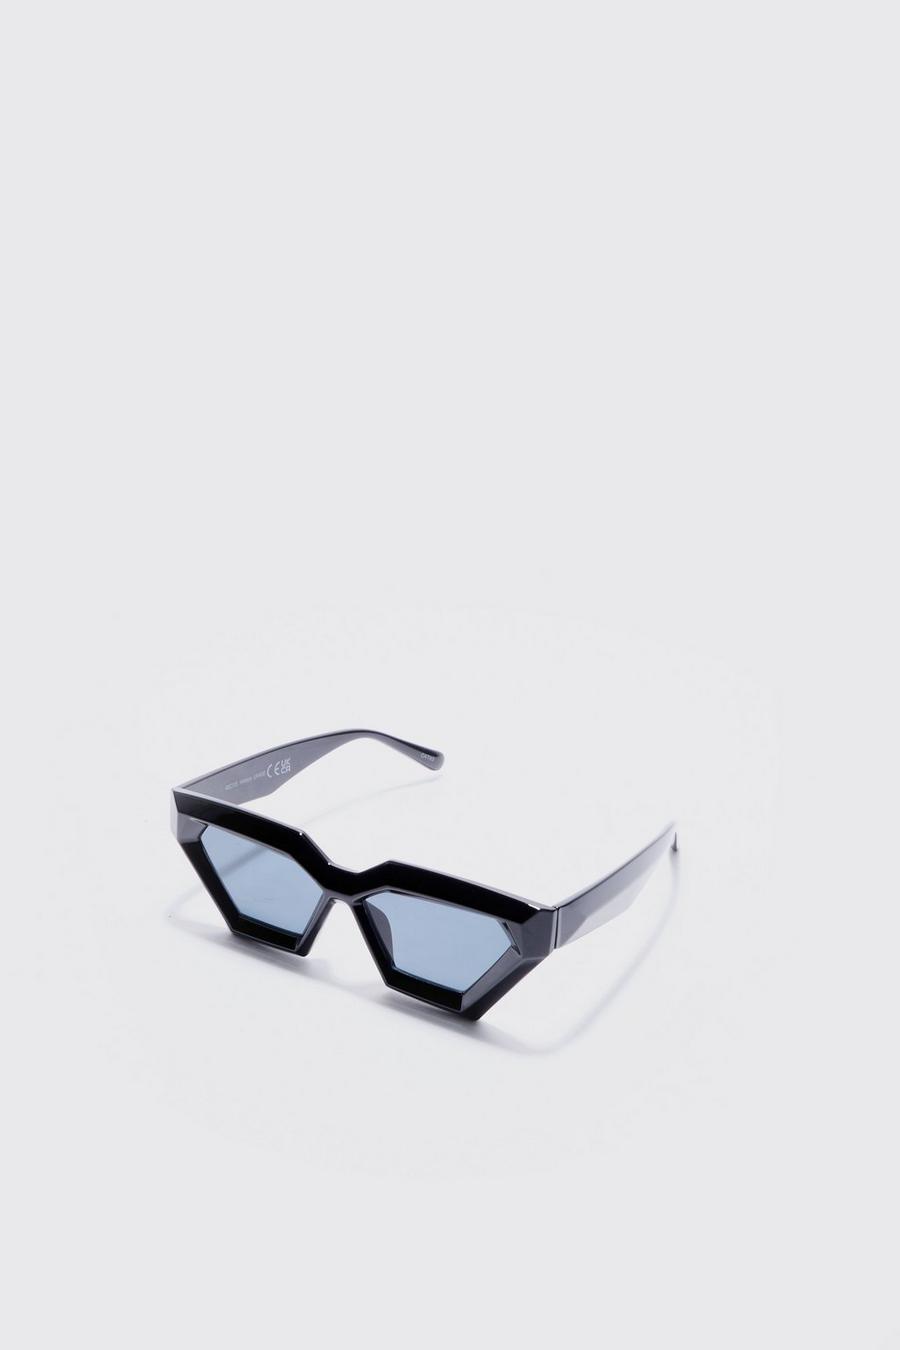 Klobige Plastik Sonnenbrille in schwarz, Black